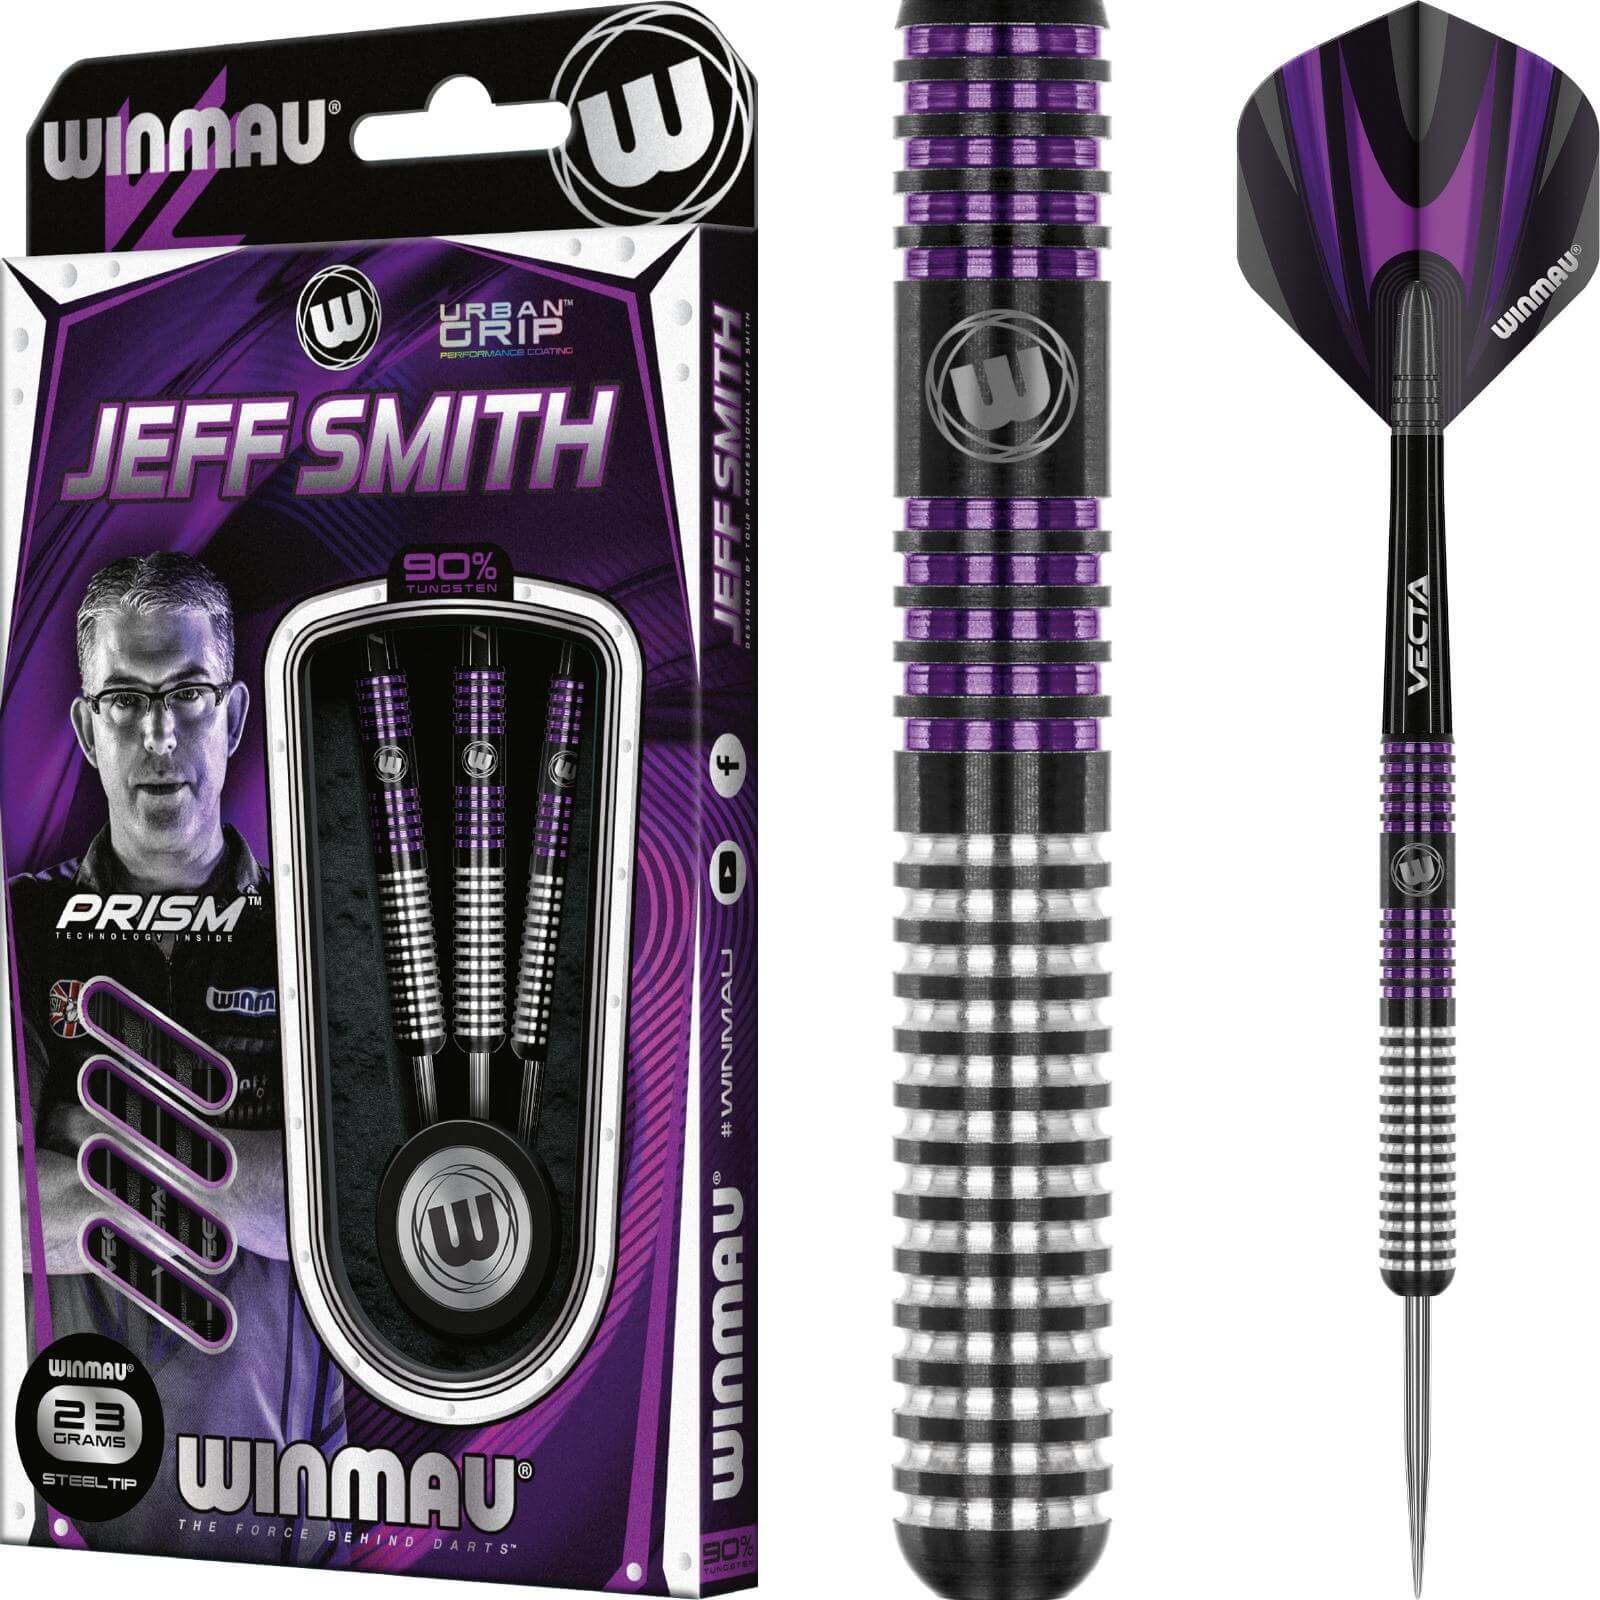 Darts - Winmau - Jeff Smith Darts - Steel Tip - 90% Tungsten - 23g 25g 